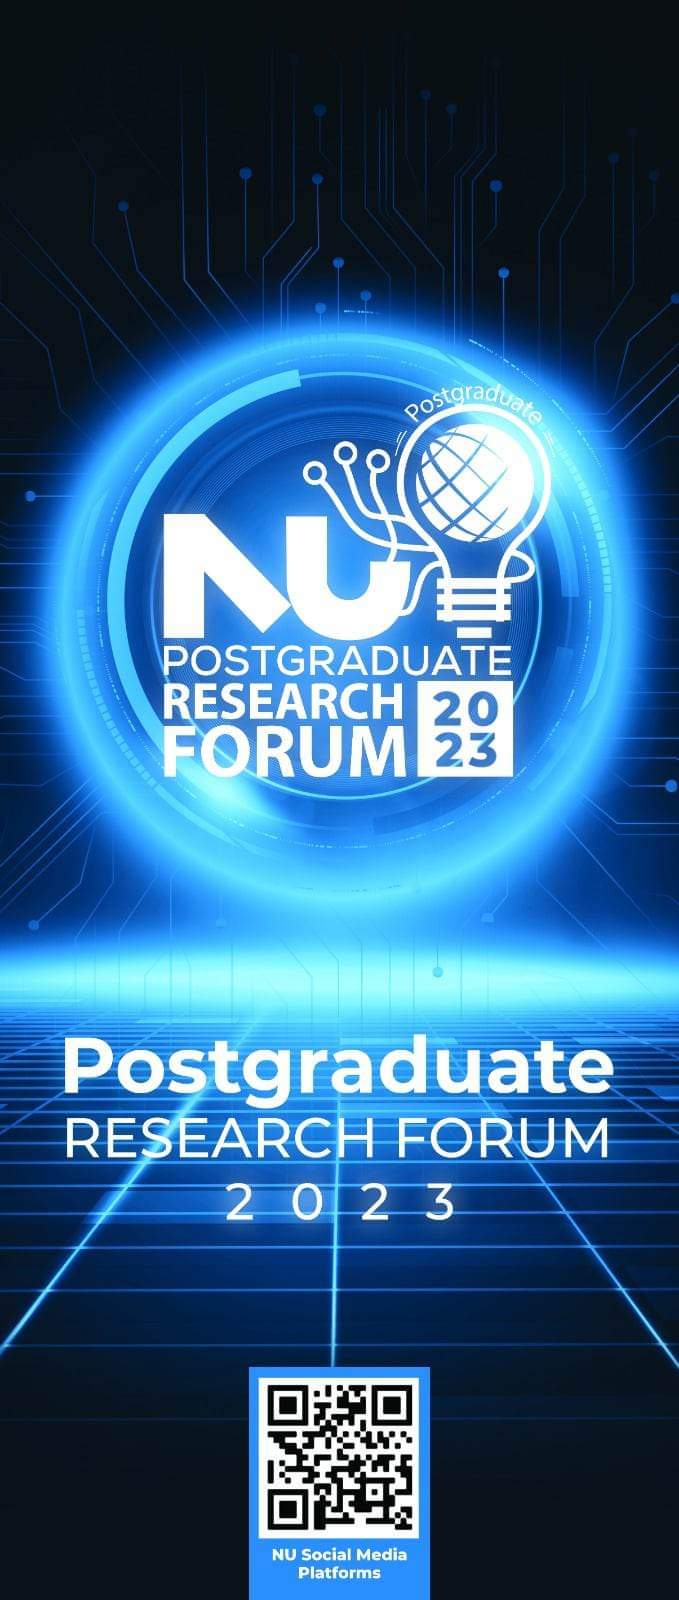 ملتقى الأبحاث الدوري لطلبة الدراسات العليا بجامعة النيل يتنافس فيه ٤٠ مشروع بحثي